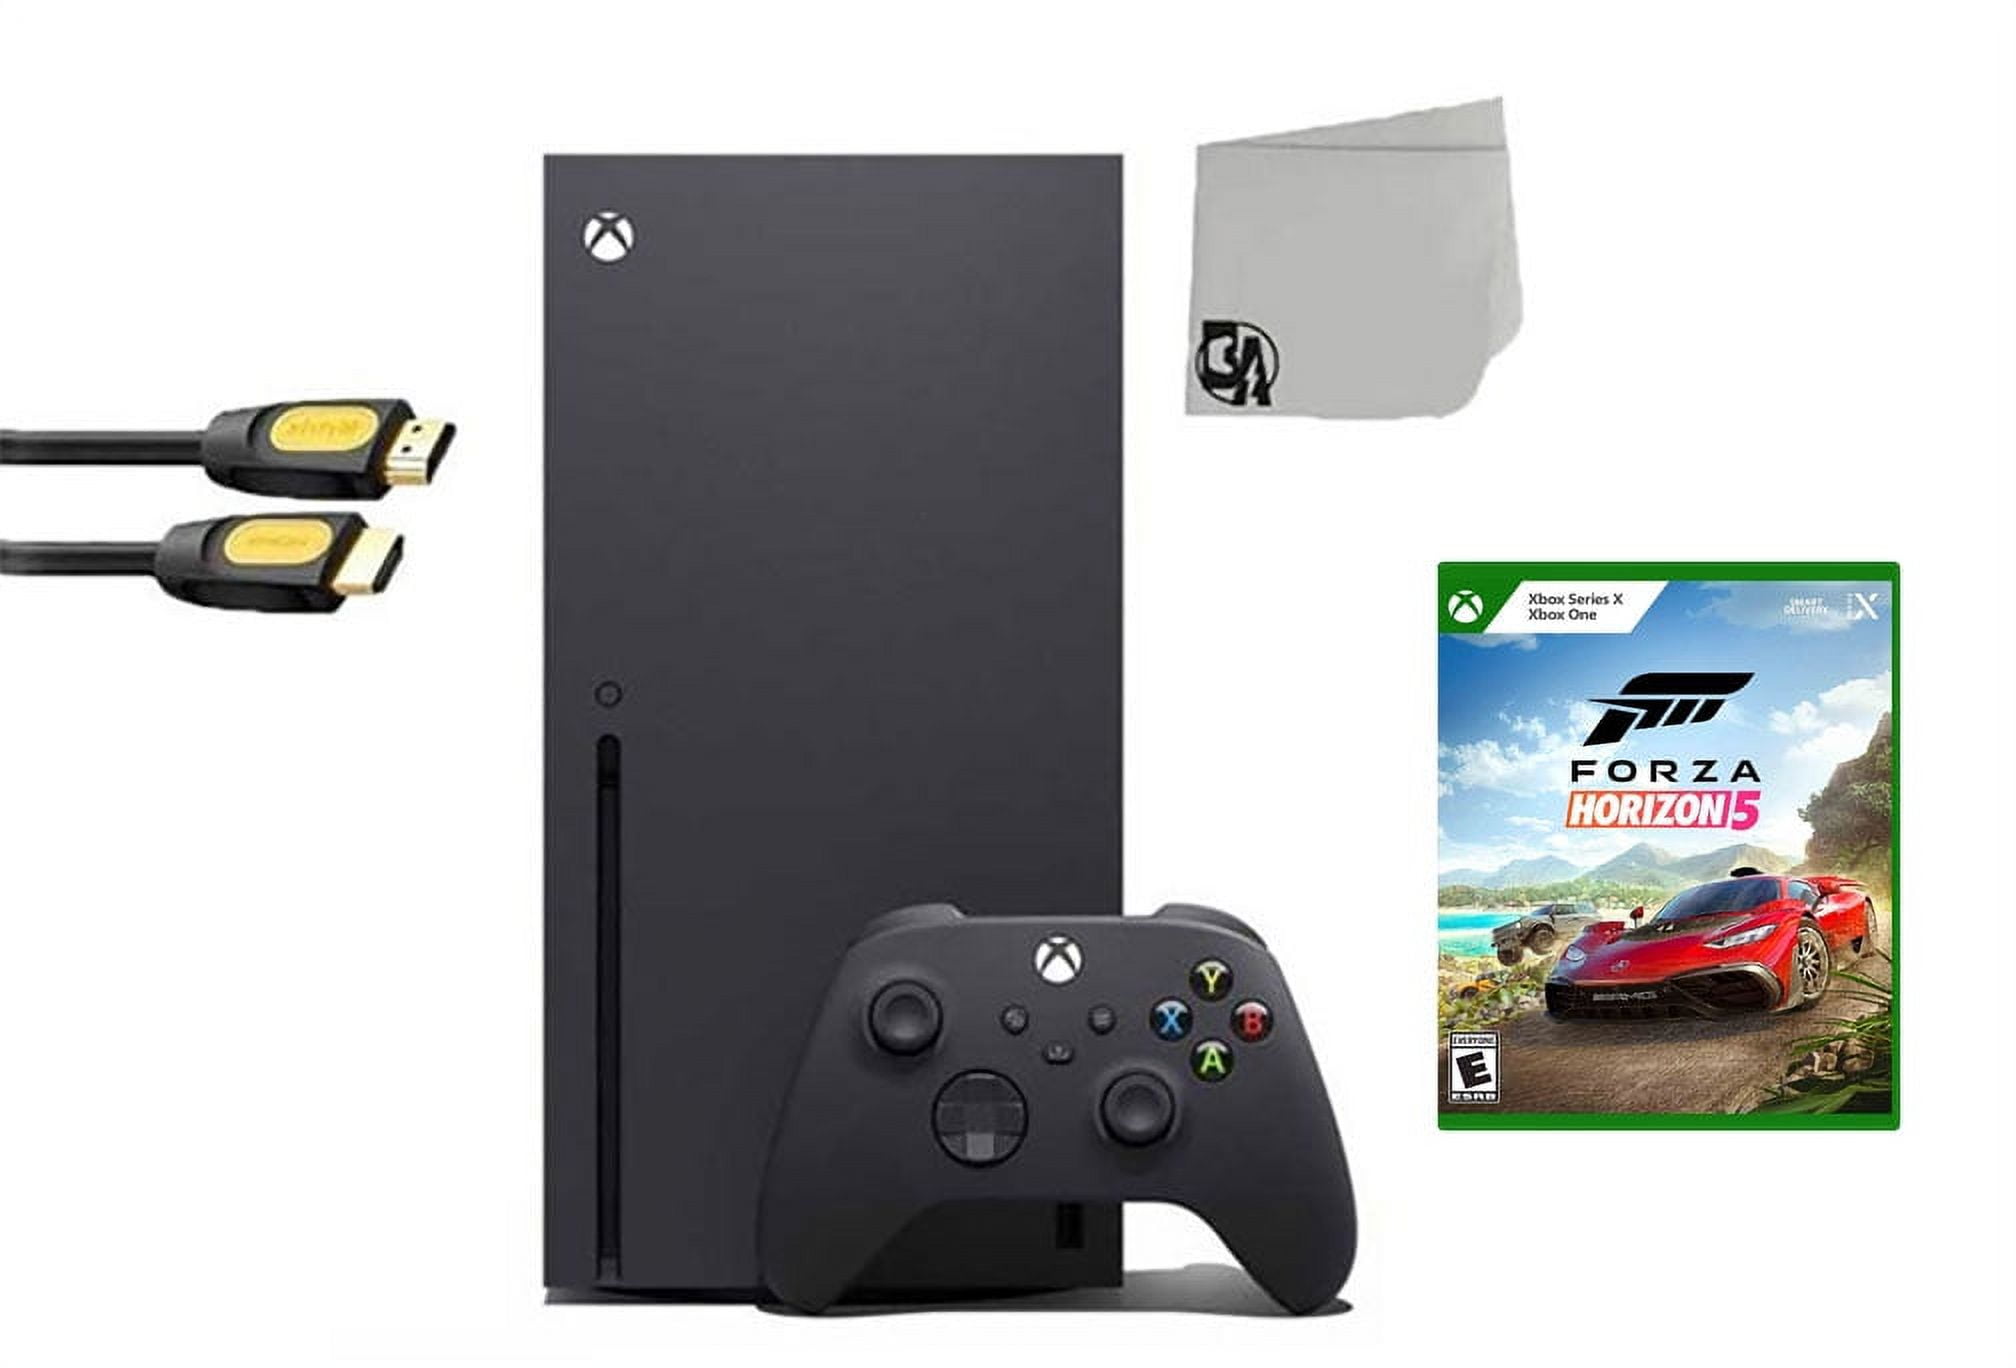 Xbox Series X – Forza Horizon 5 Bundle 